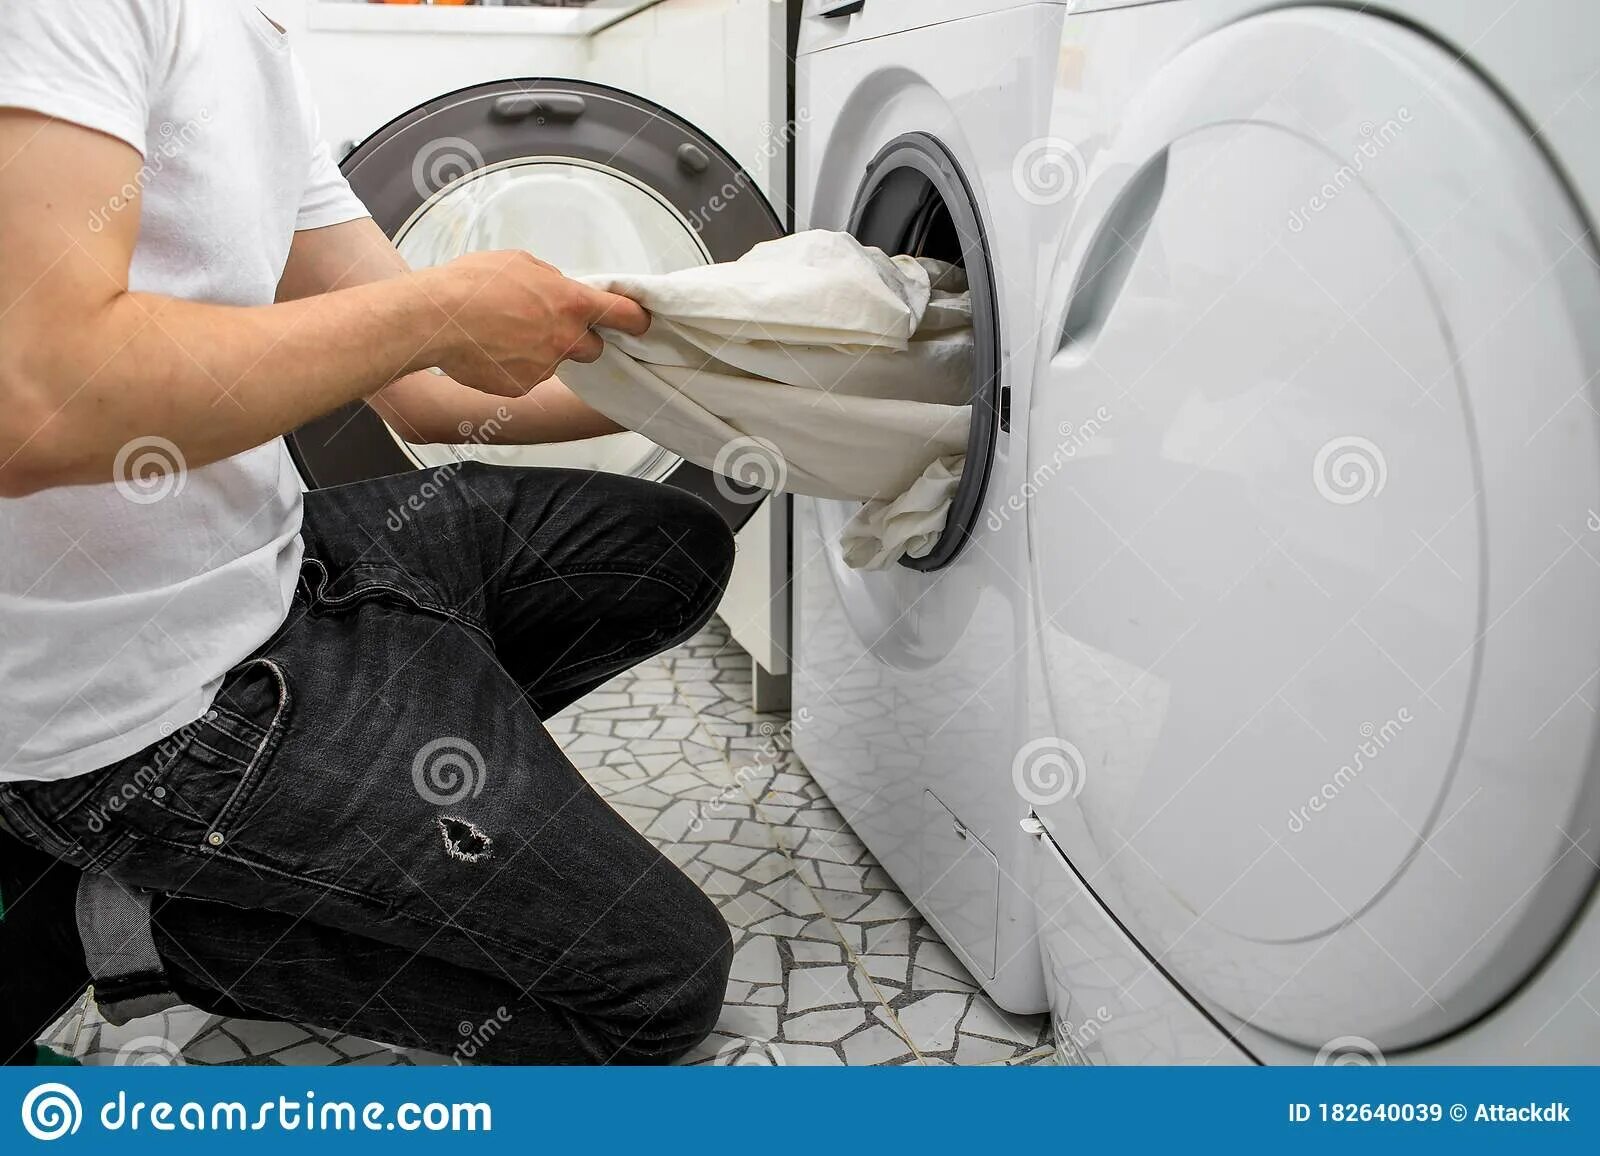 Уровень 32 помоги машинке. Мужчина кладет белье в стиральную машину. Достает белье из машинки. Laundry Day. Как правильно укладывать белье в стиральную машину автомат.